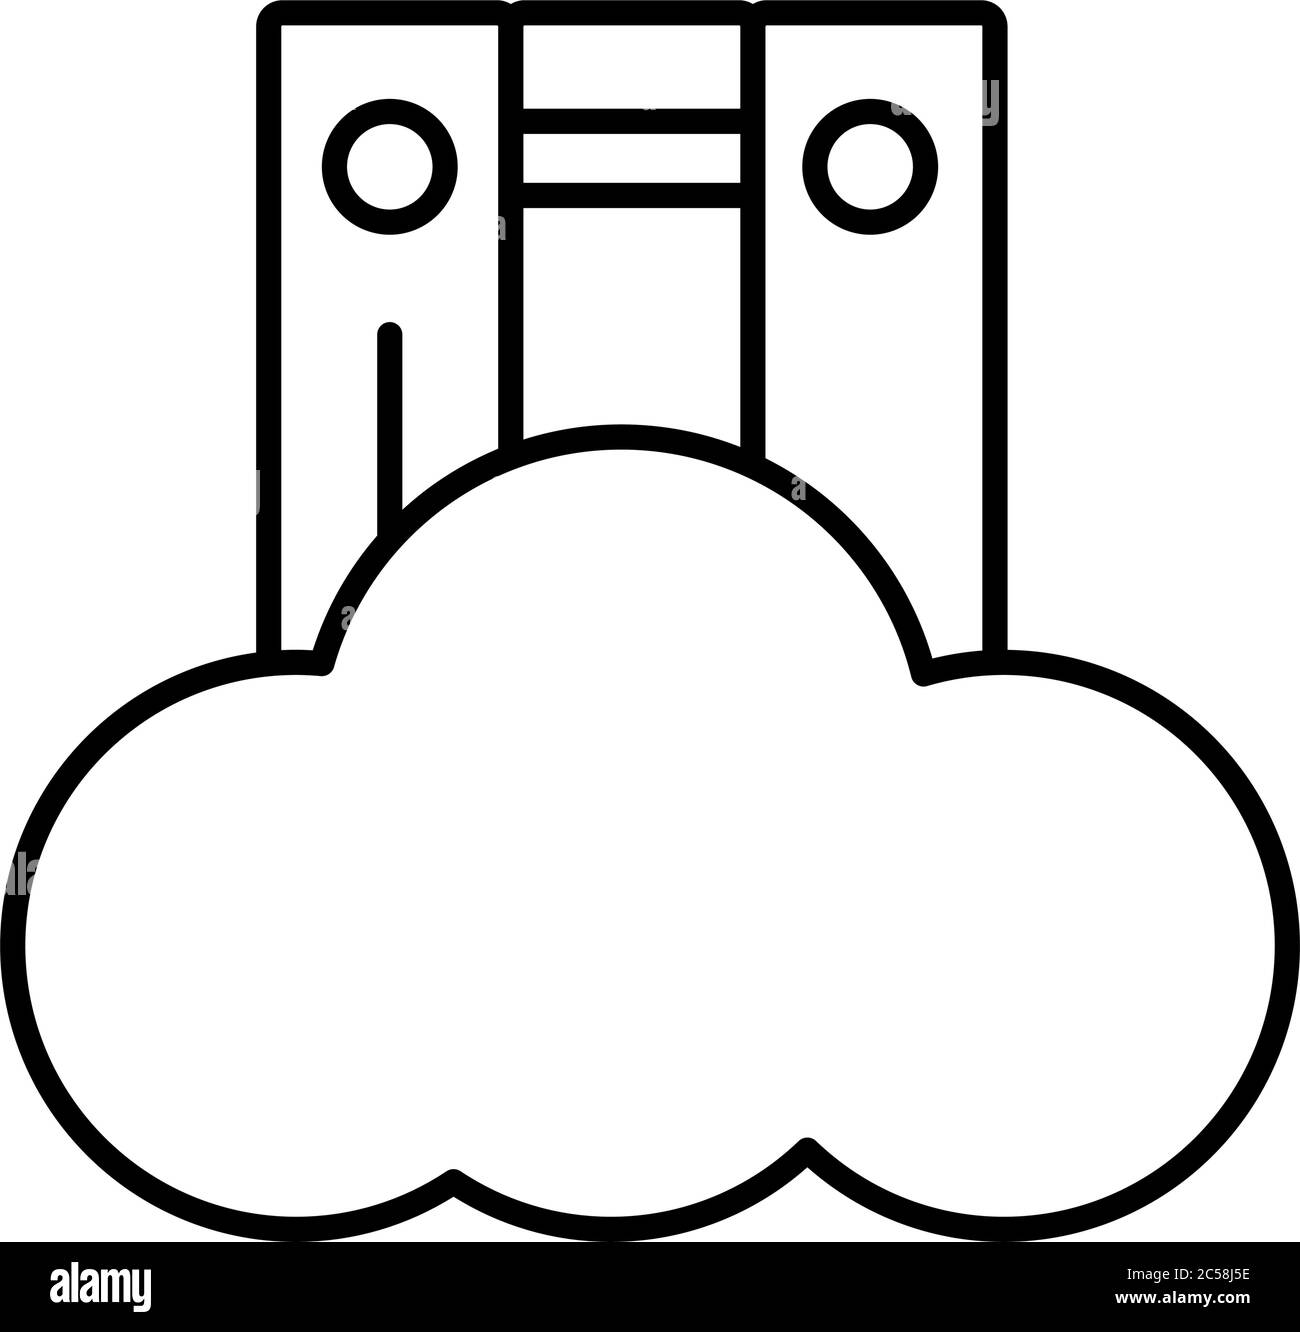 livres électroniques avec cloud computing education en ligne style dessin vectoriel illustration Illustration de Vecteur